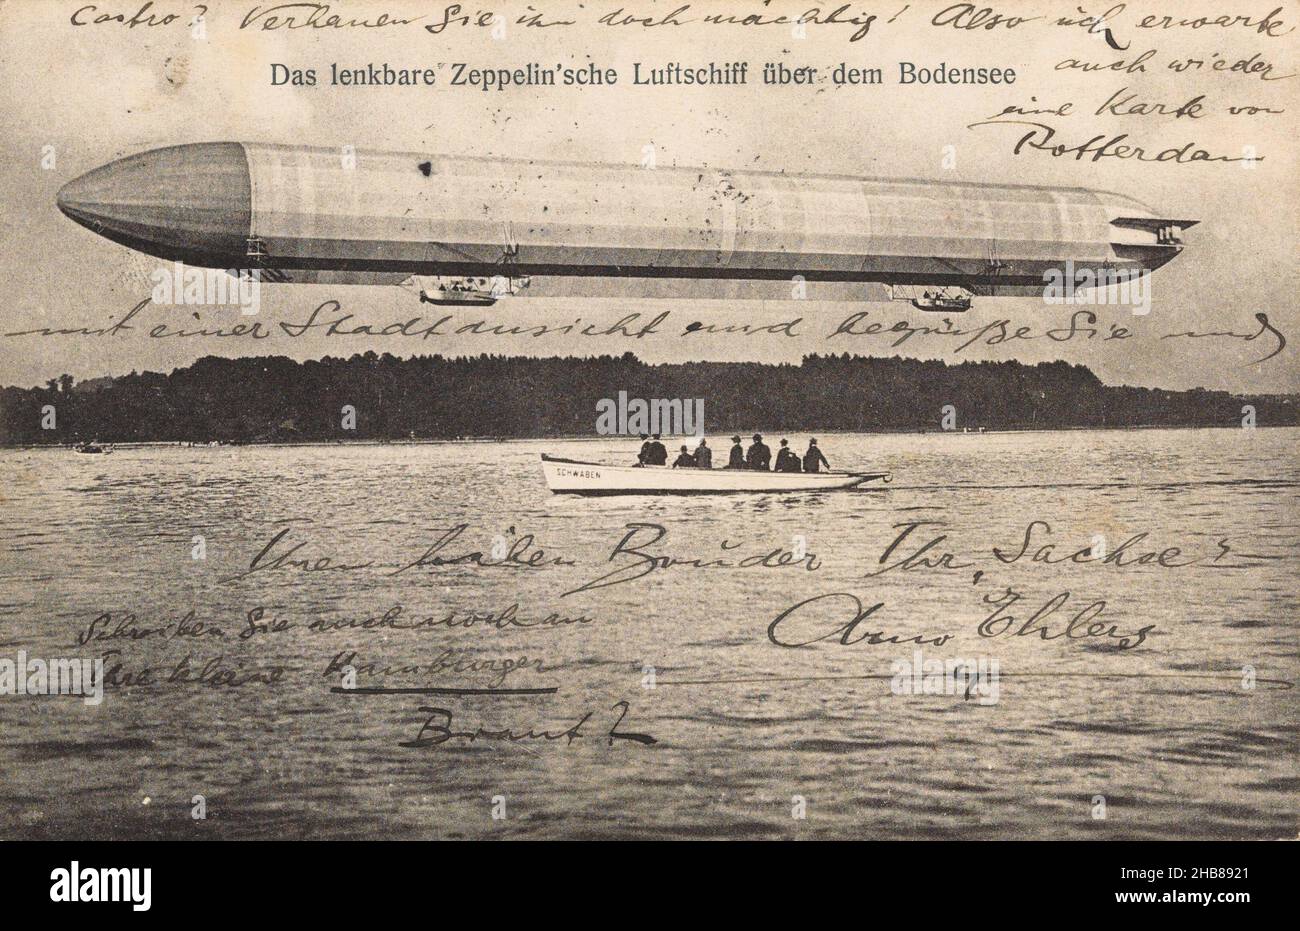 Zeppelin au-dessus du lac de Constance, Das lenkbare Zeppelin'sche Luftschiff über dem Bodensee (titre sur objet), anonyme, Allemagne, c.1906 - po ou avant 15-sept-1908, papier, collotype, hauteur 89 mm × largeur 137 mm Banque D'Images